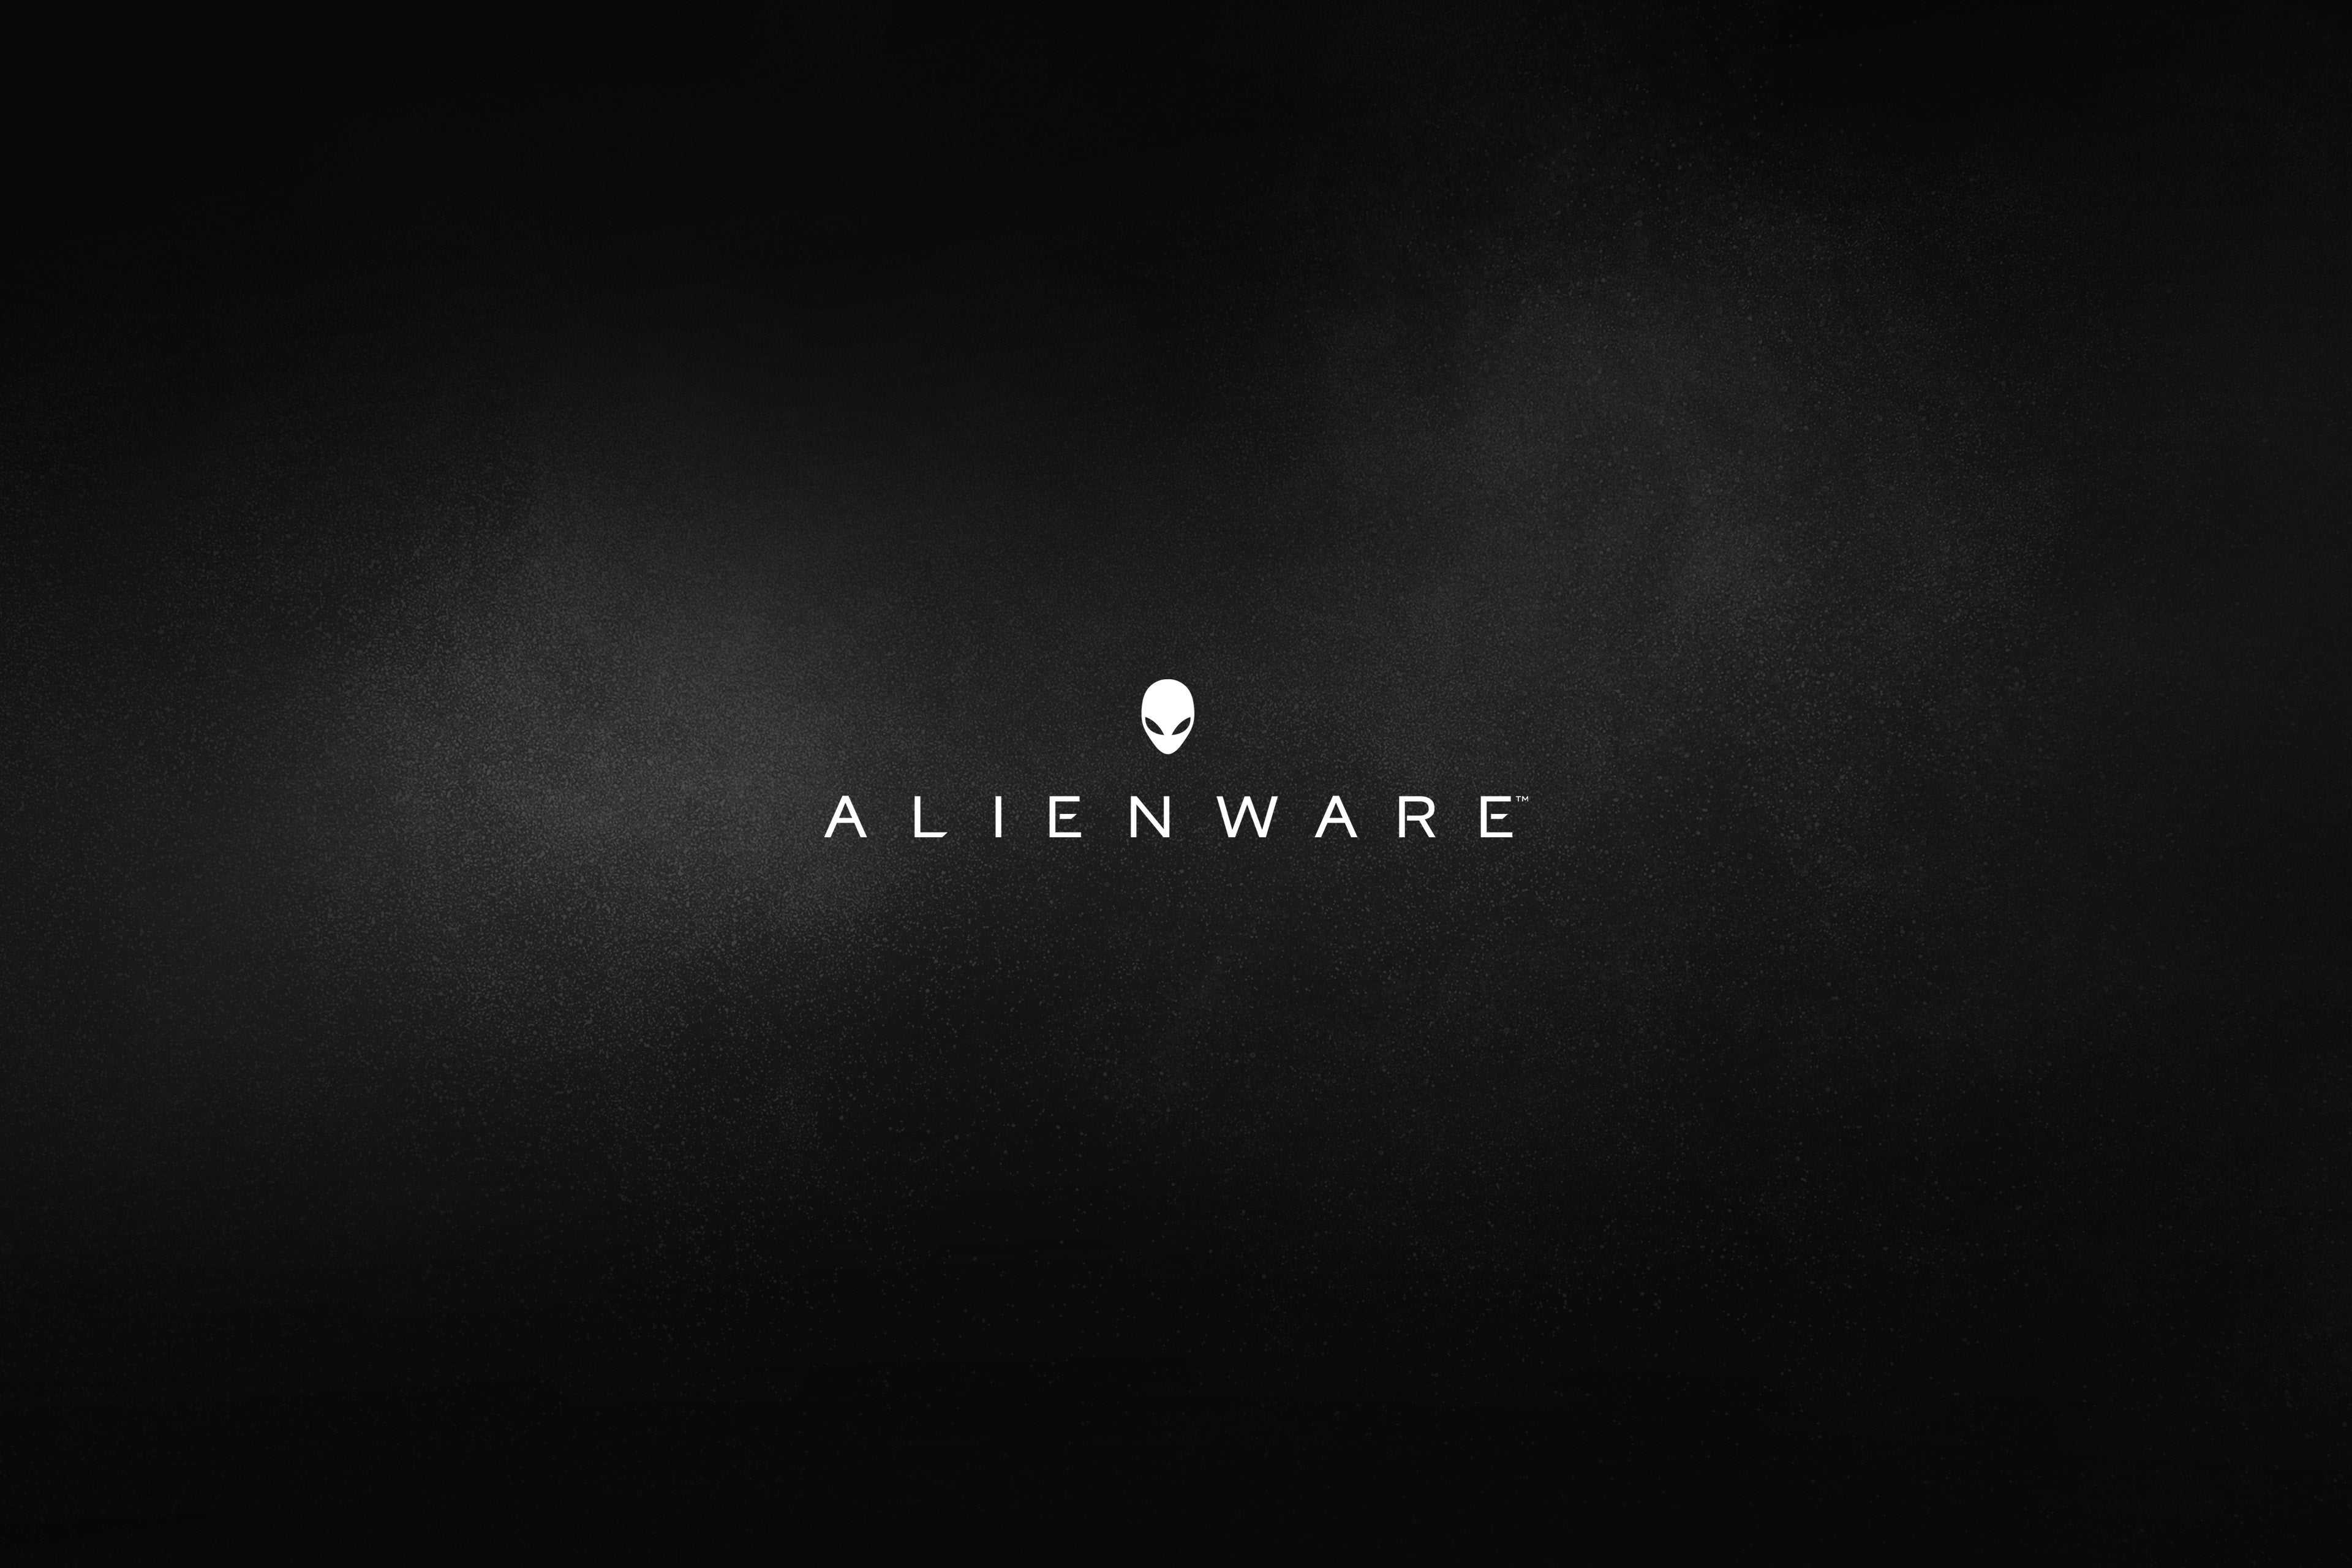 Alienware Dell Simple Background Minimalism Dark Background Logo 3840x2560